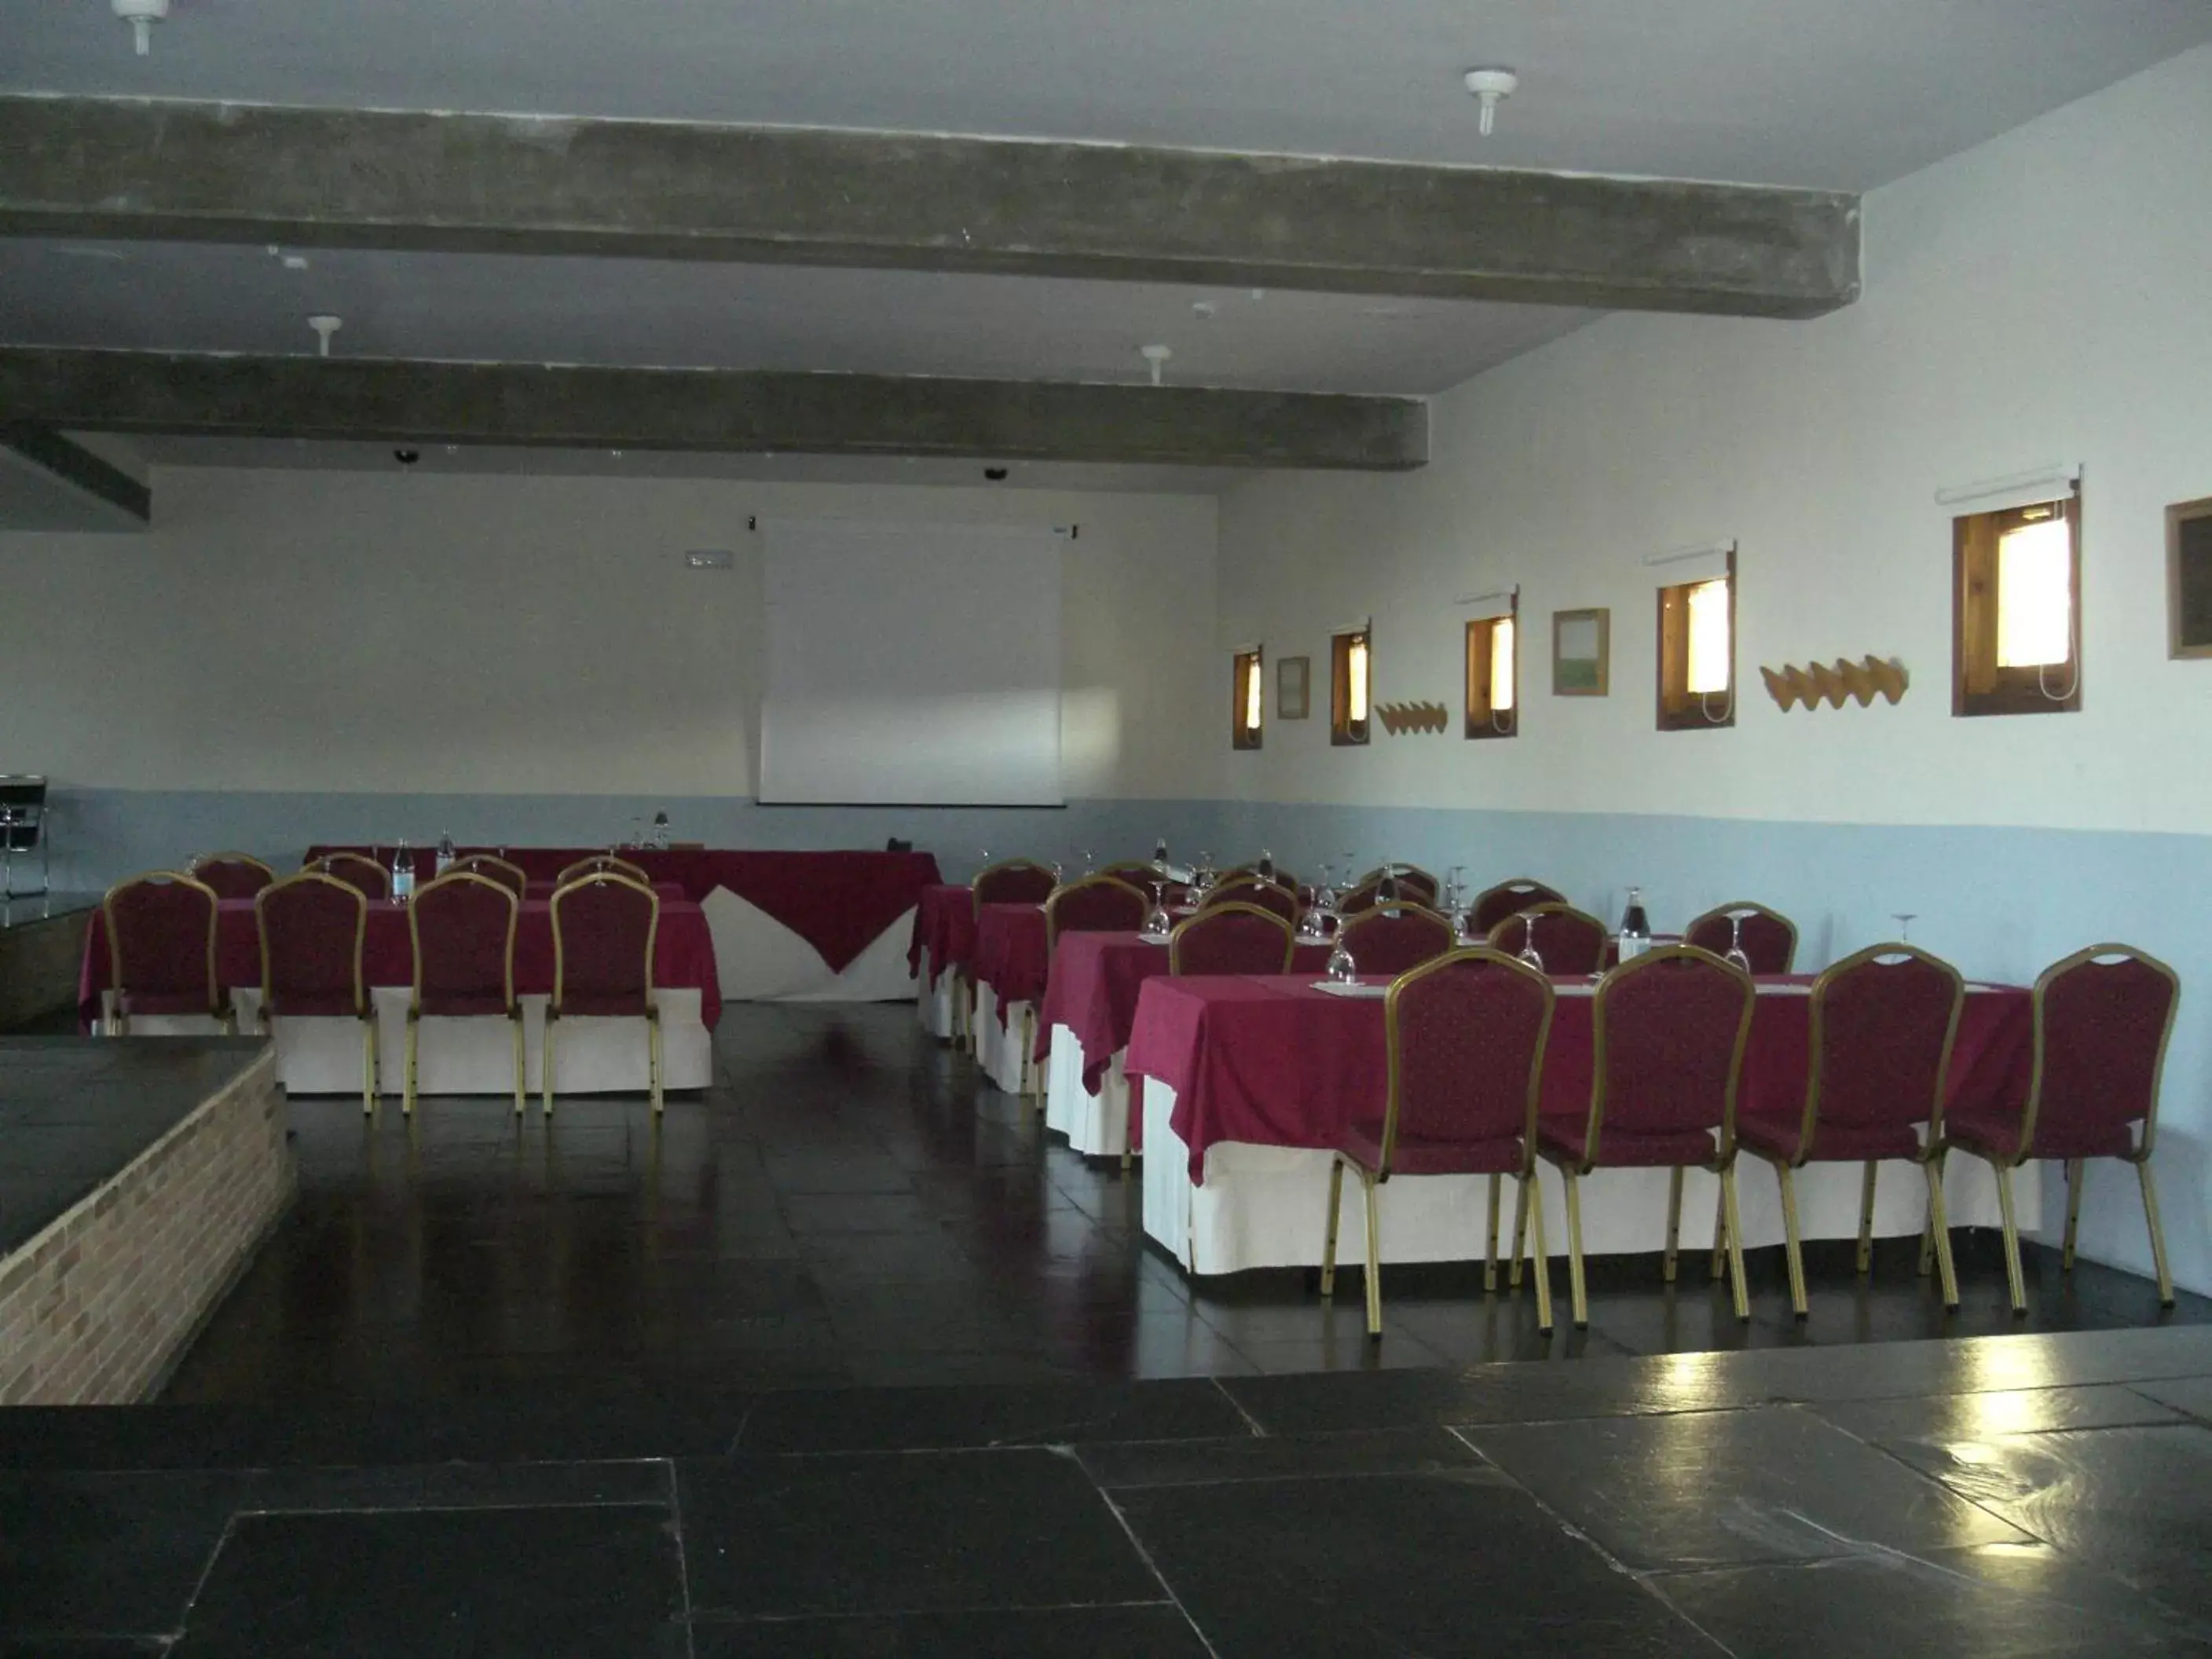 Meeting/conference room, Banquet Facilities in Hospederia Parque de Monfragüe